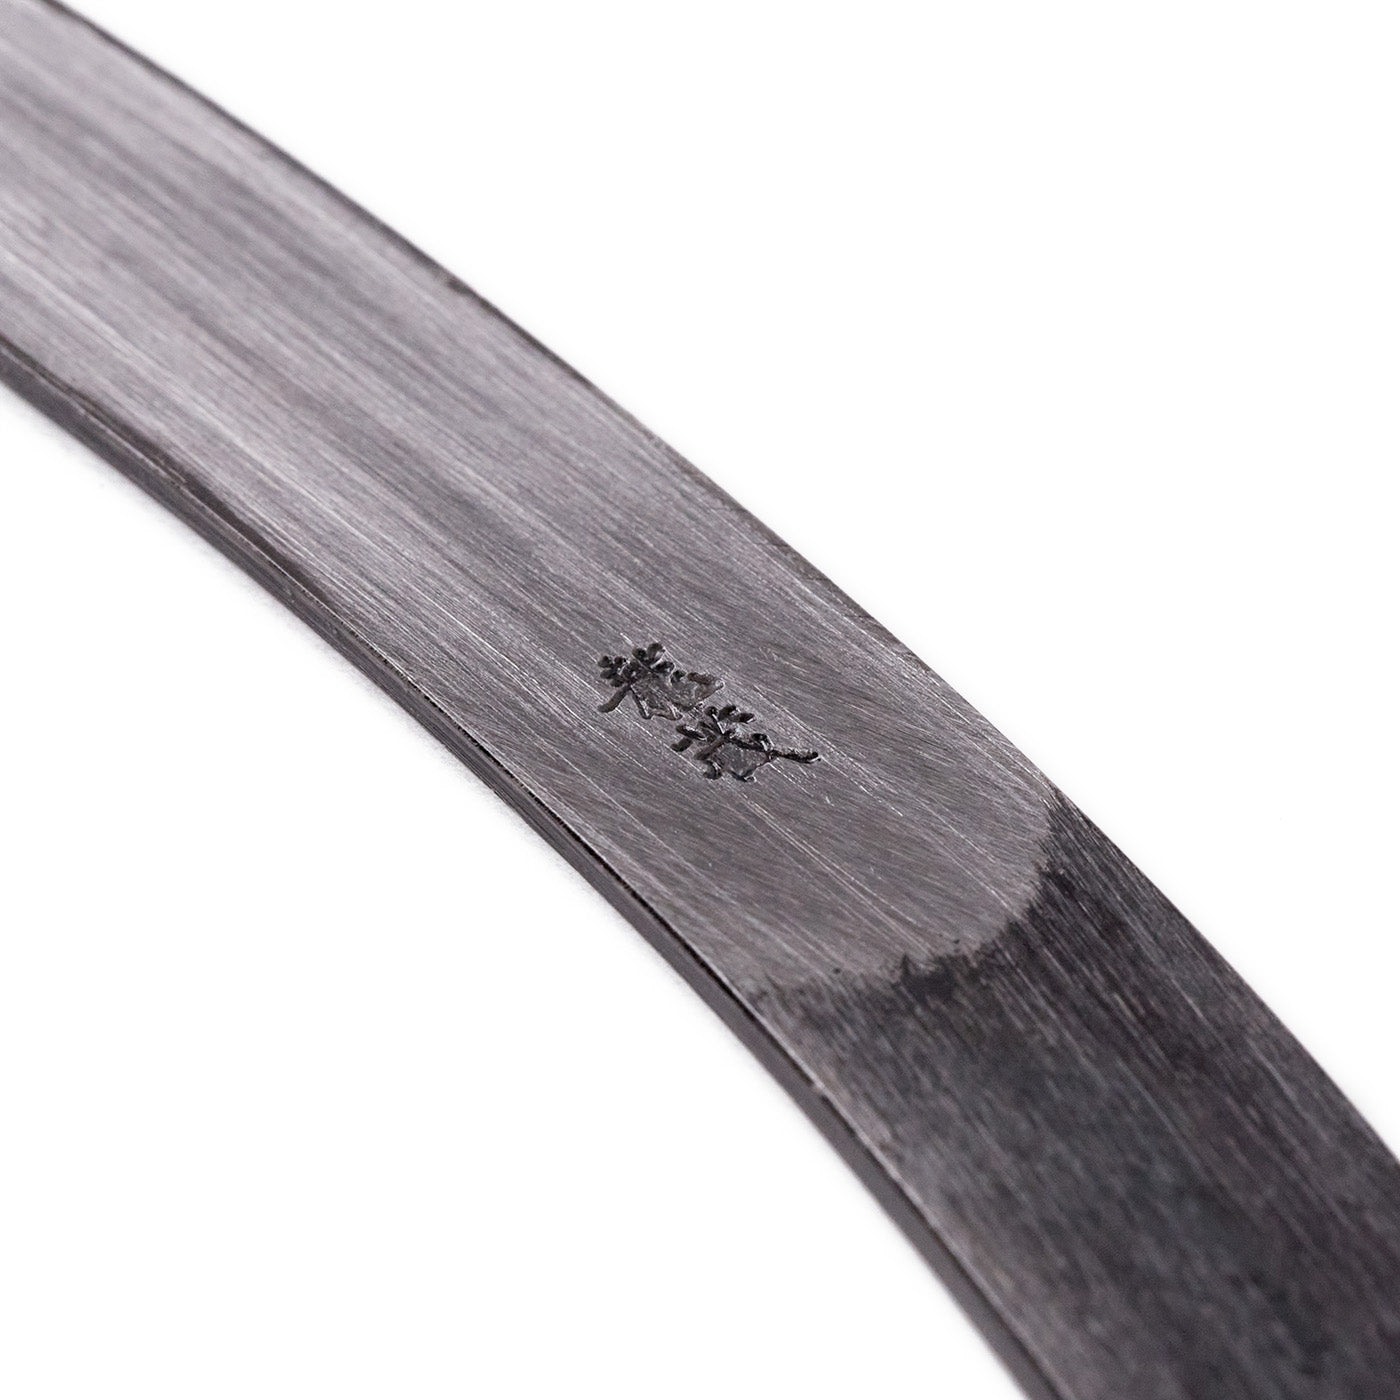 Kiridashi Knife Bend Type 15mm